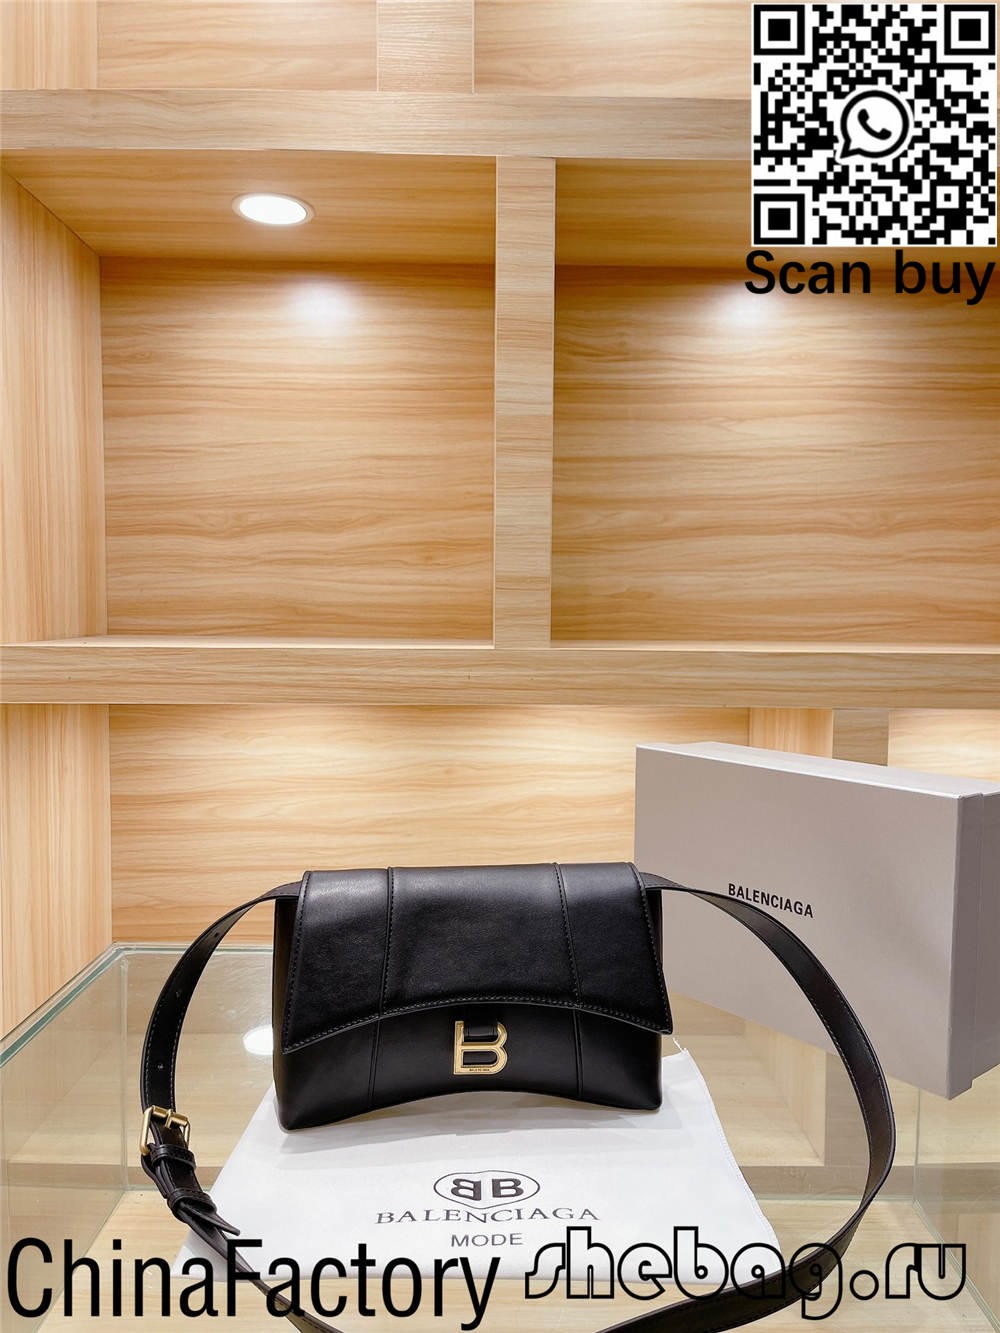 Como comprar réplicas baratas de bolsas balenciaga de Hong Kong? (2022 atualizado) - Loja online de bolsa Louis Vuitton falsa de melhor qualidade, bolsa de designer de réplica ru